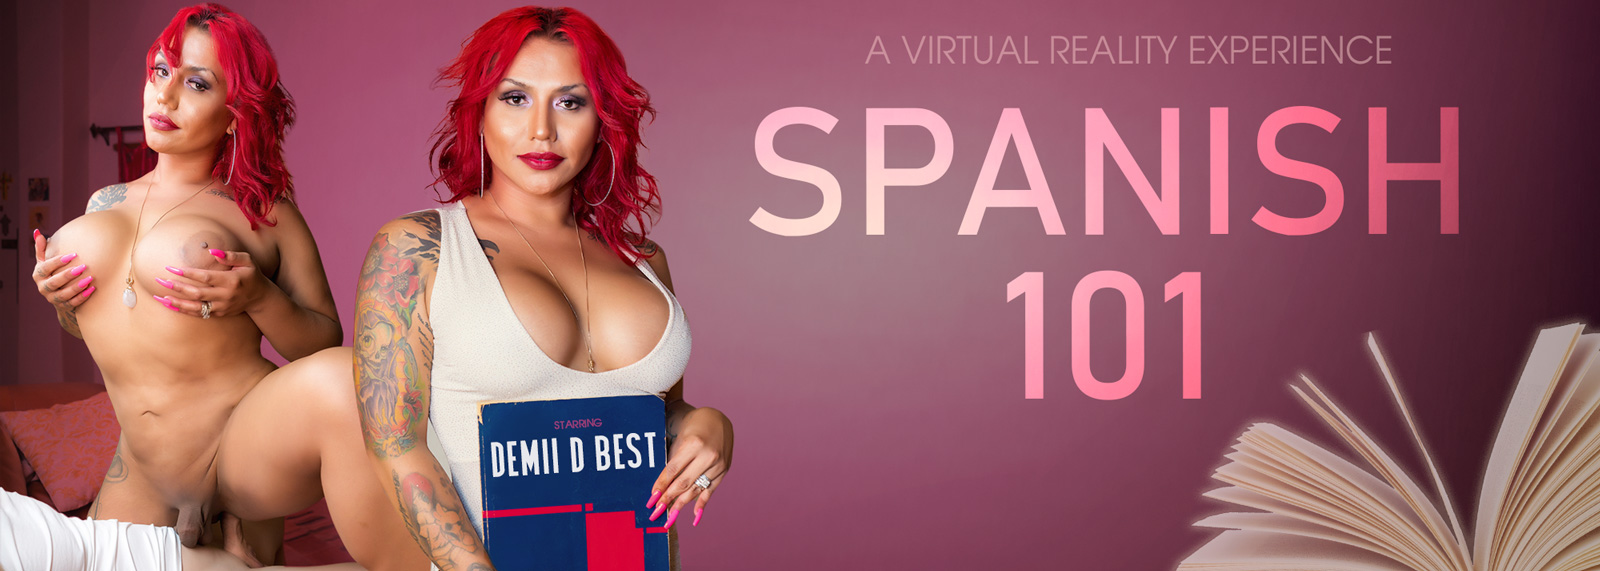 Spanish 101 - Trans VR Porn Video, Starring: Demii D Best